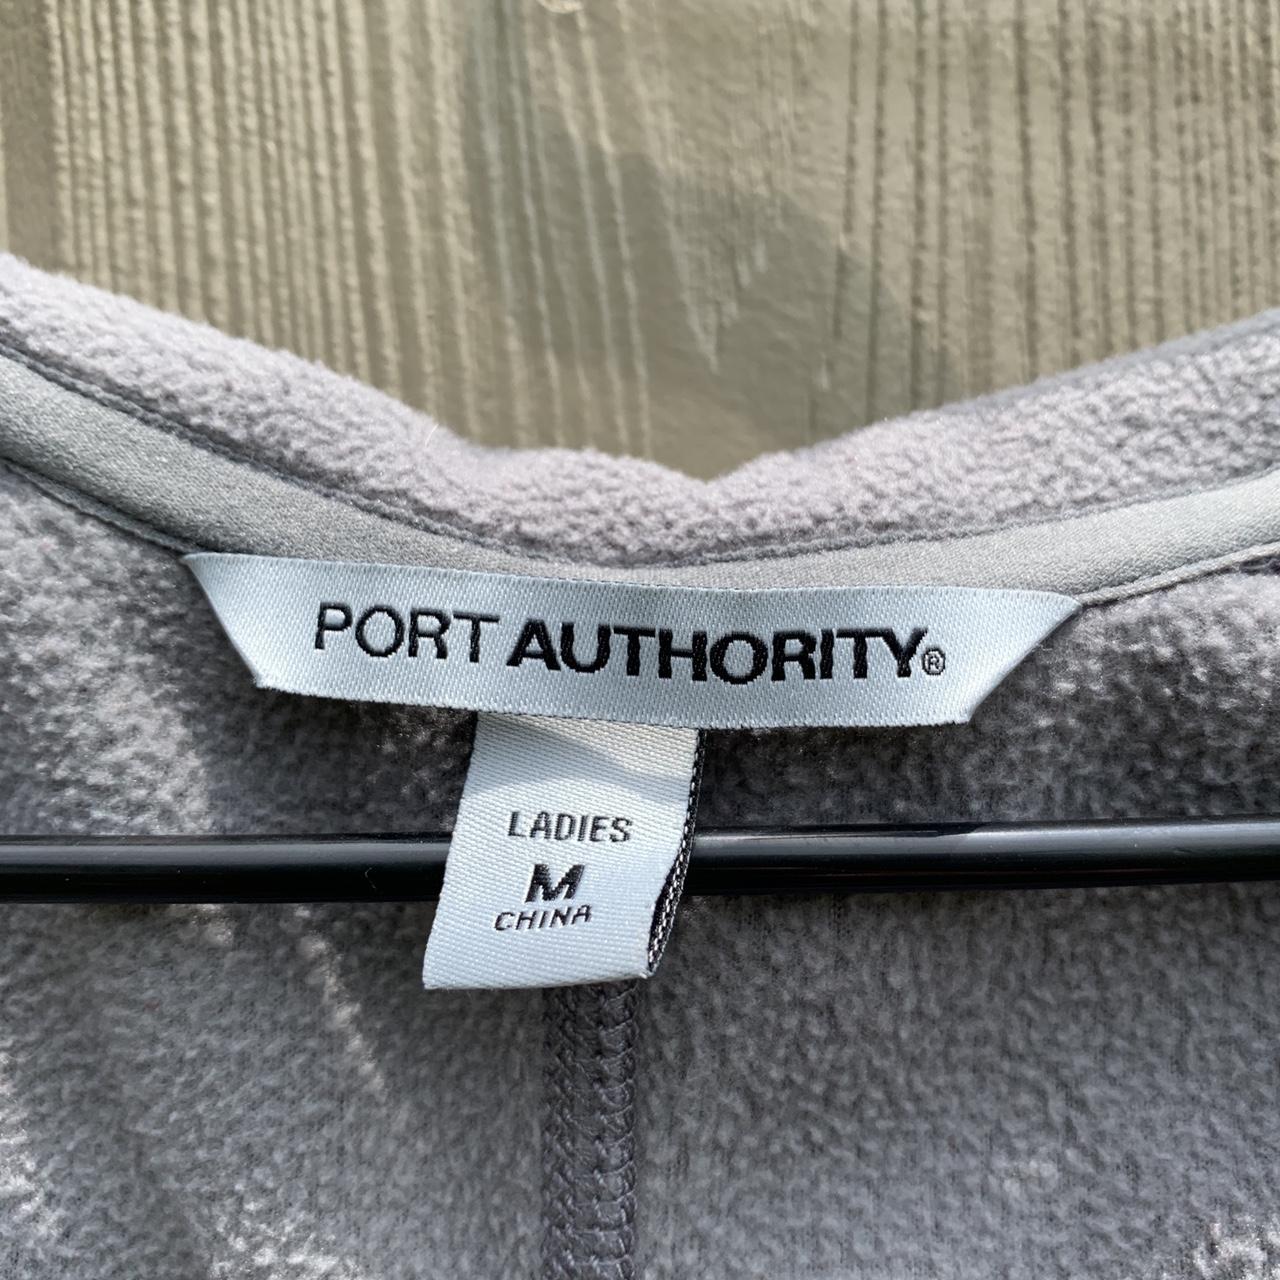 Port Authority Zip Up Pullover in Grey Size:... - Depop